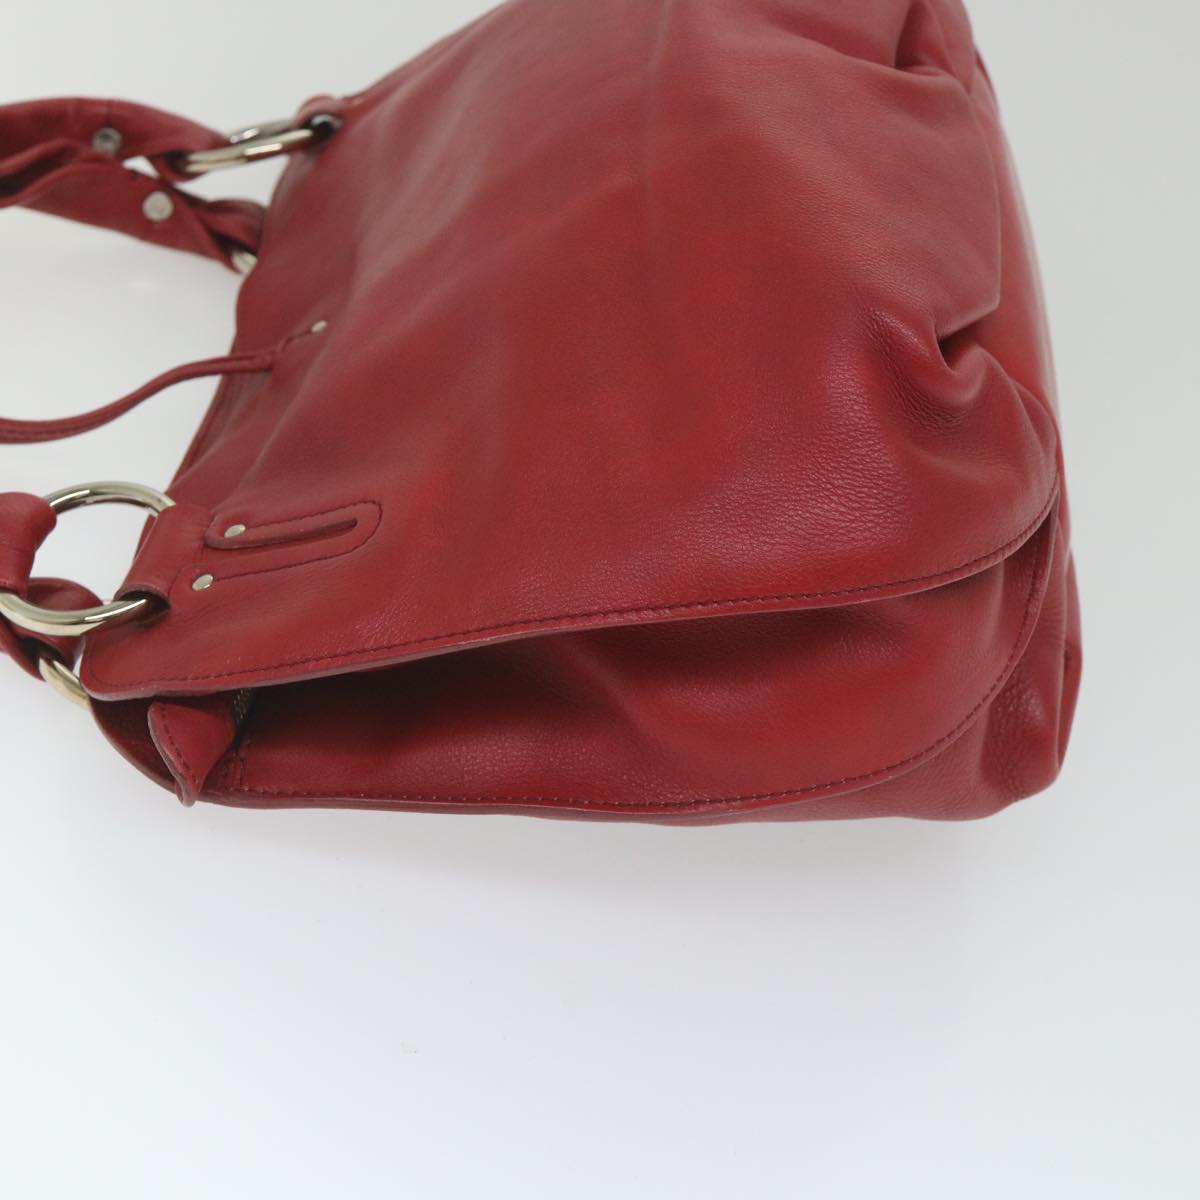 CELINE Shoulder Bag Leather Red Auth 58409